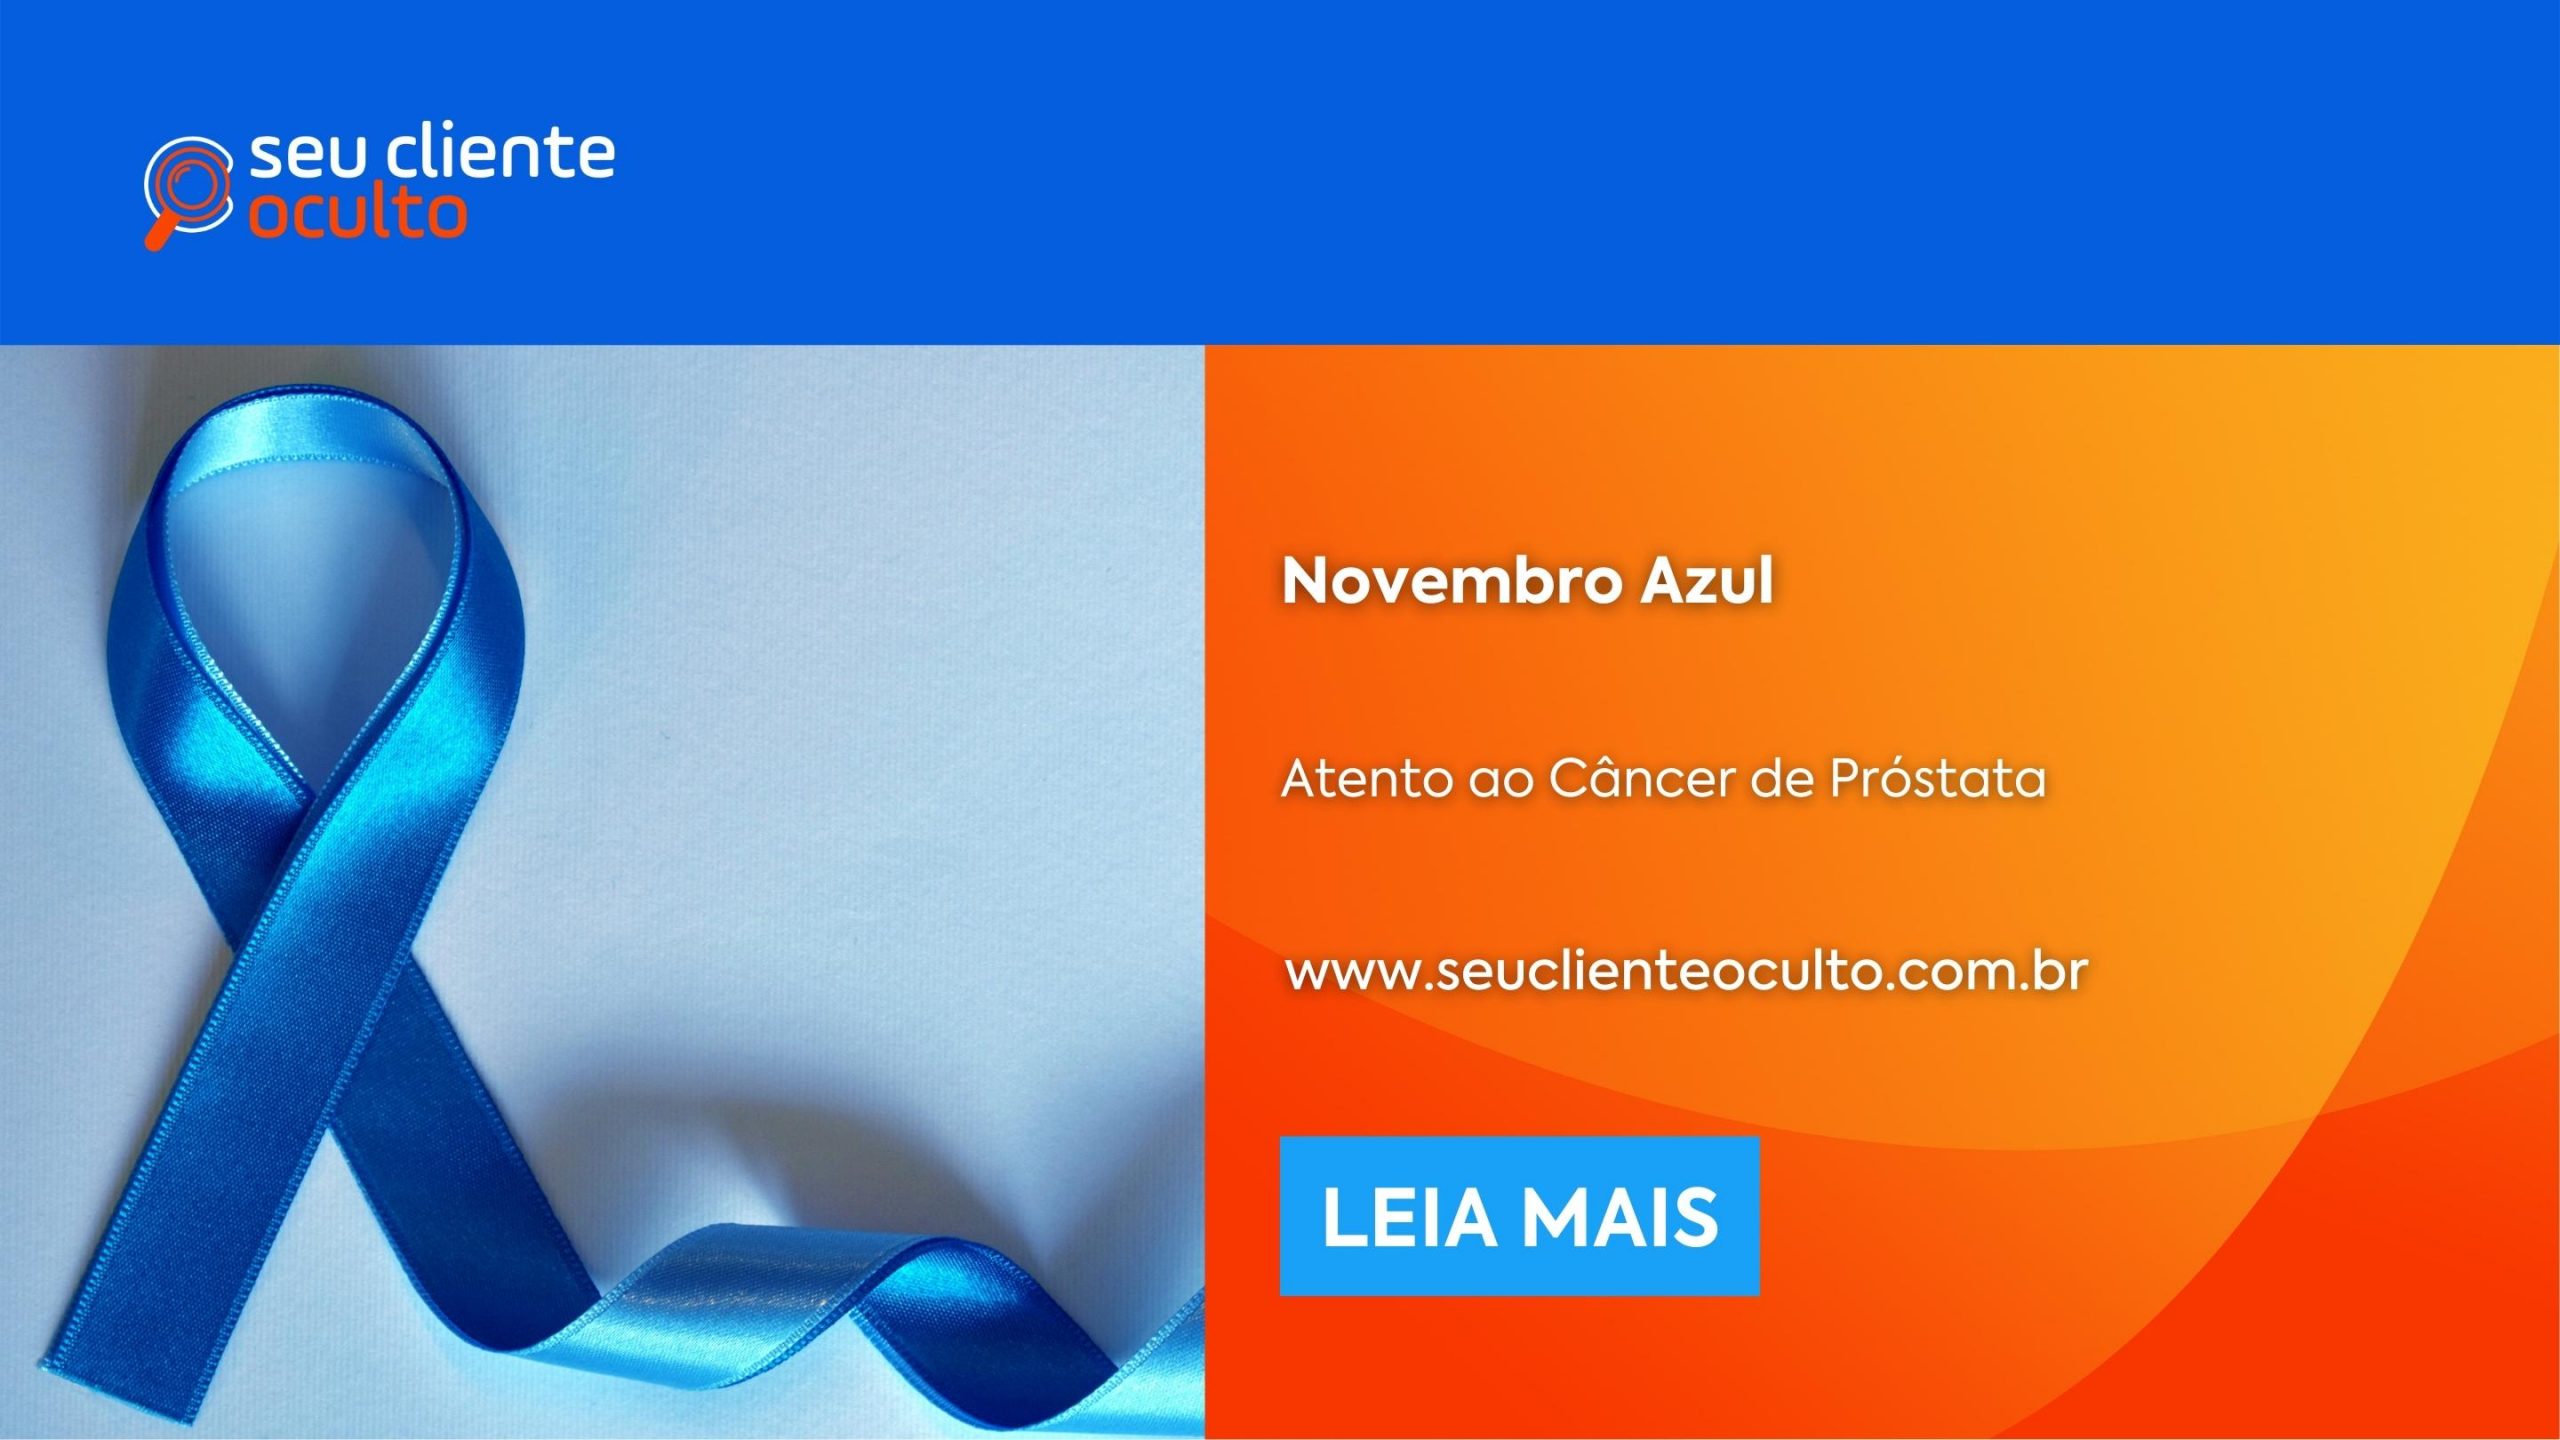 Novembro Azul: Atento ao Câncer de Próstata